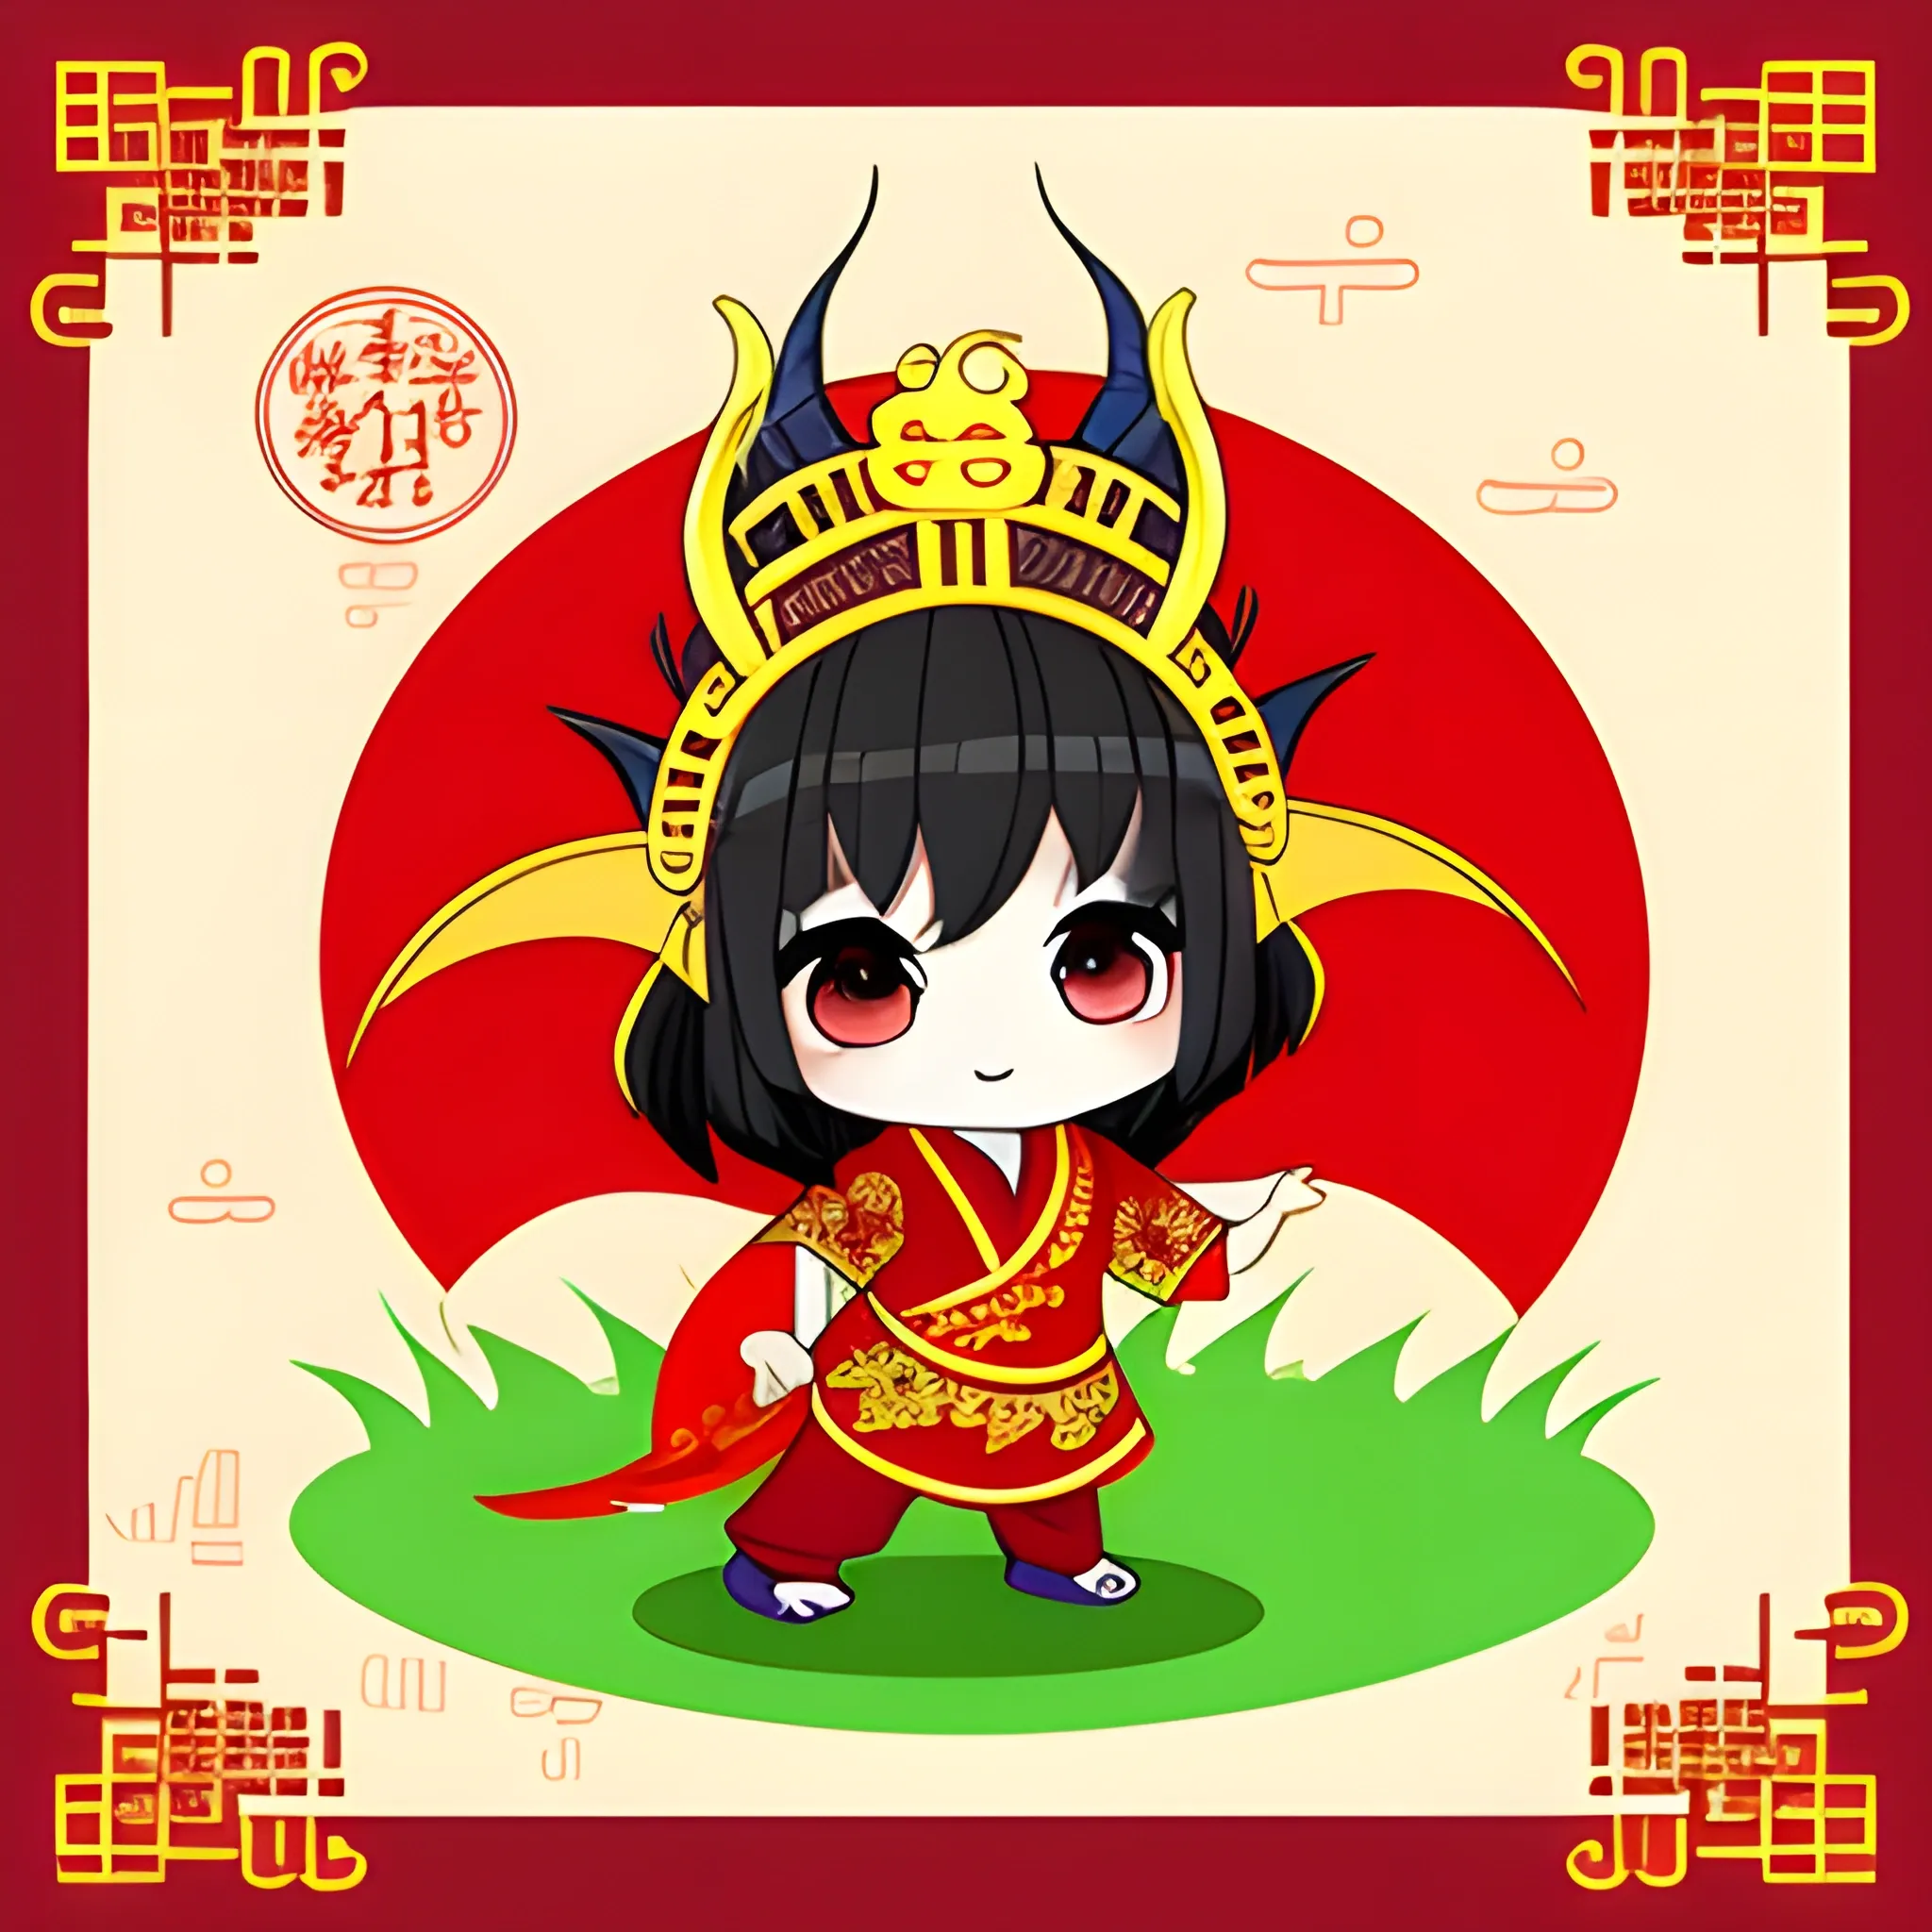 chibi dragon wearing VietNamese outfit